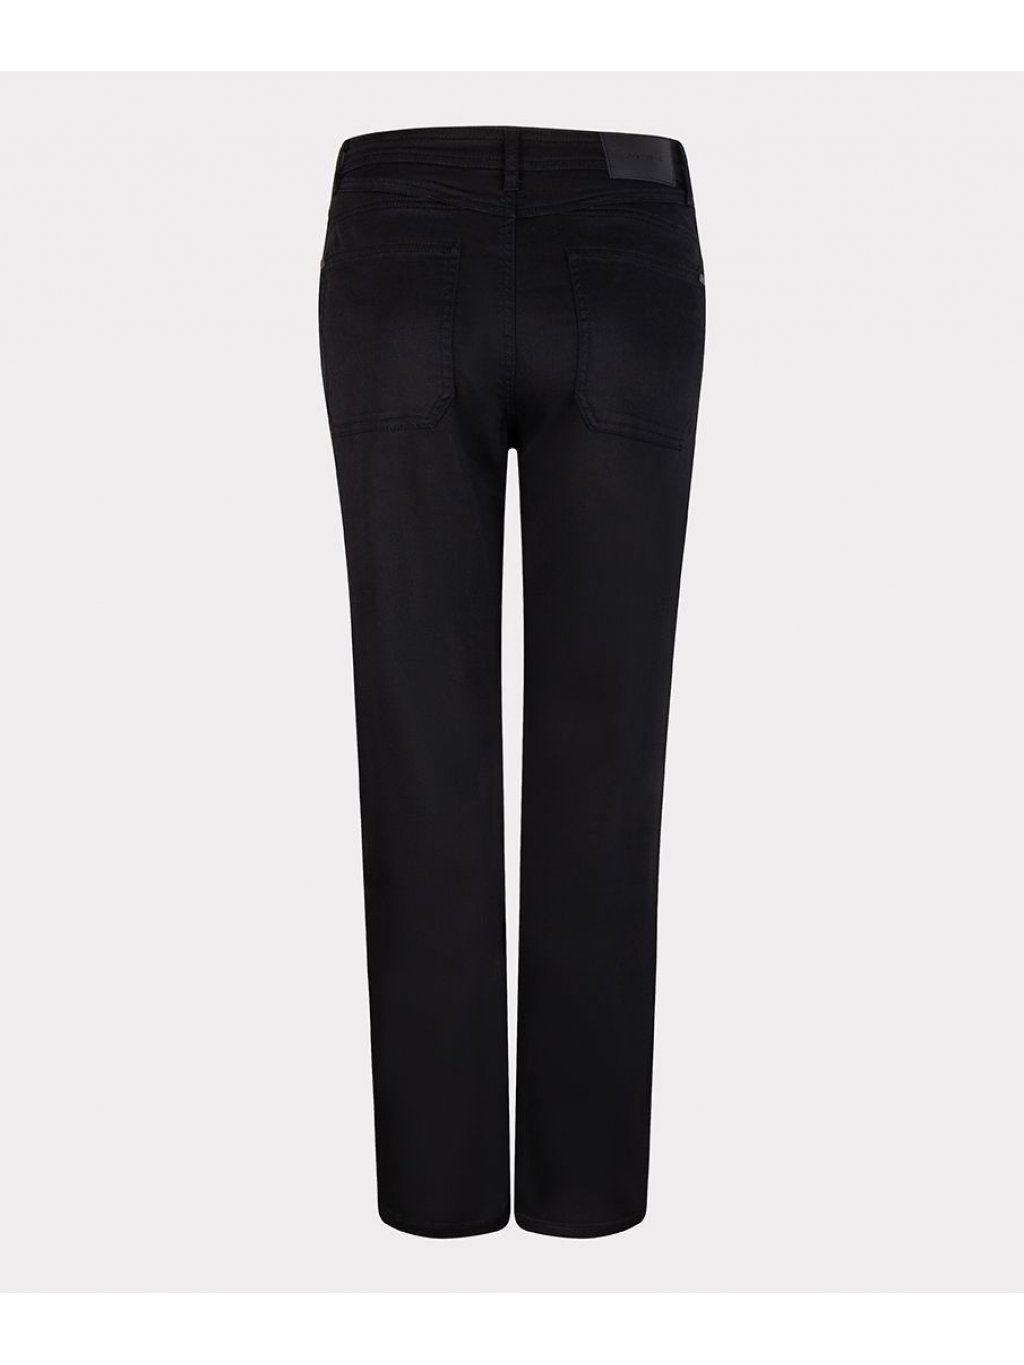 Kalhoty Esqualo 12502 černé džíny do pasu